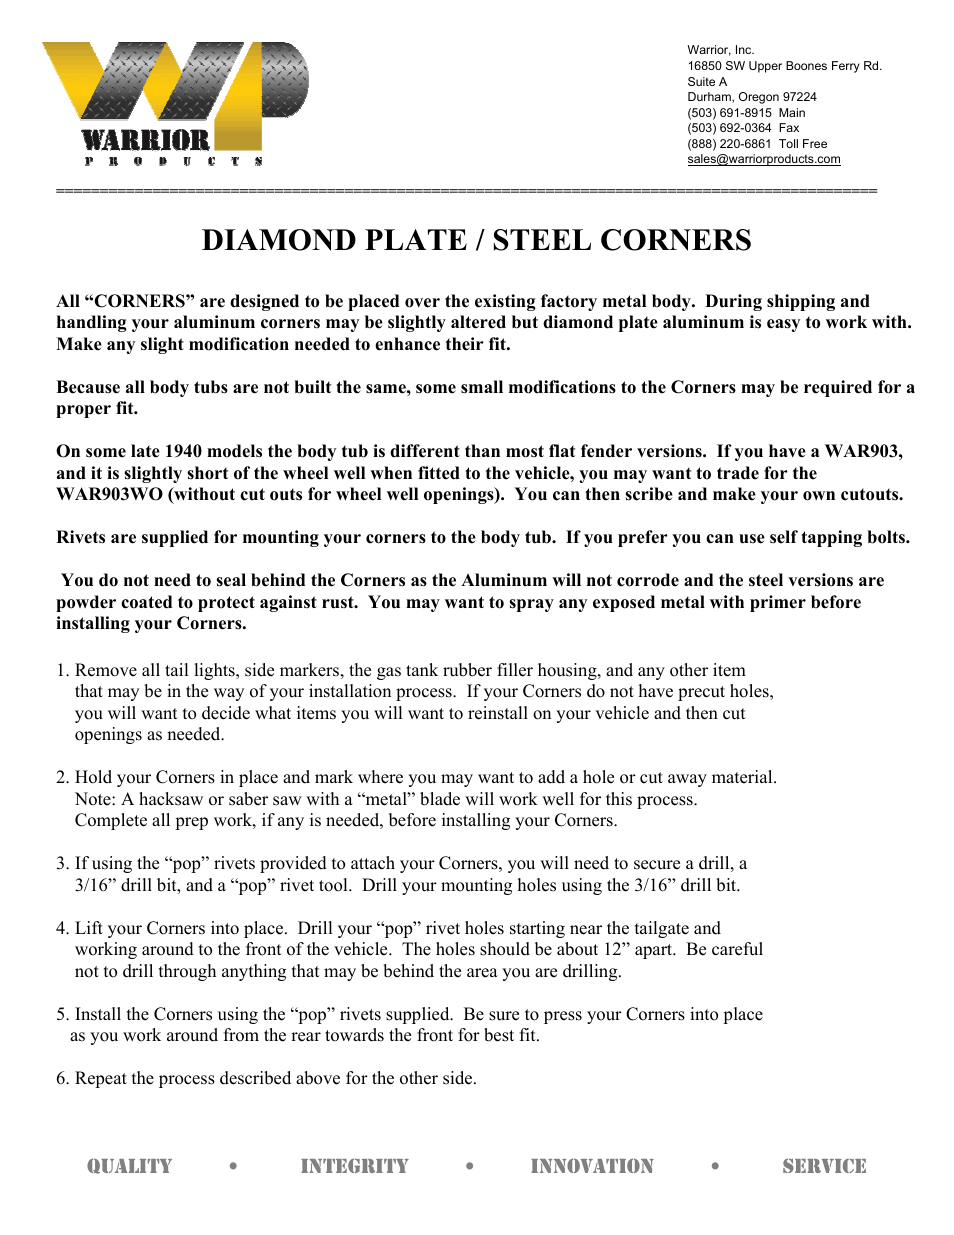 DIAMOND PLATE _ STEEL CORNERS (1986 – 1992 Suzuki Samurai)